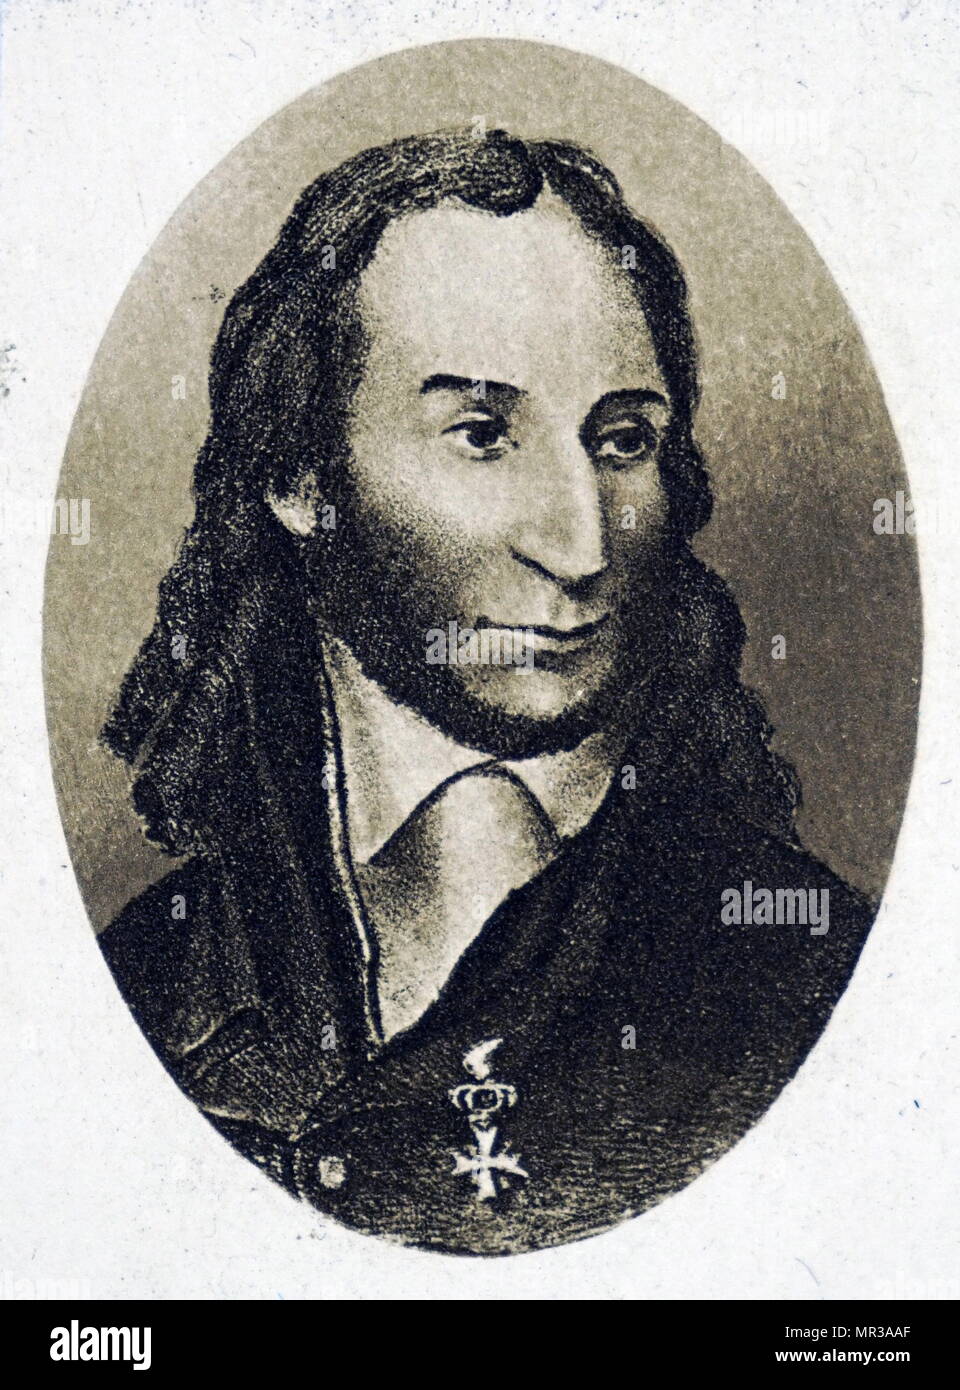 Portrait de Niccolo Paganini (1782-1840) un violoniste italien, guitariste et compositeur. En date du 19e siècle Banque D'Images